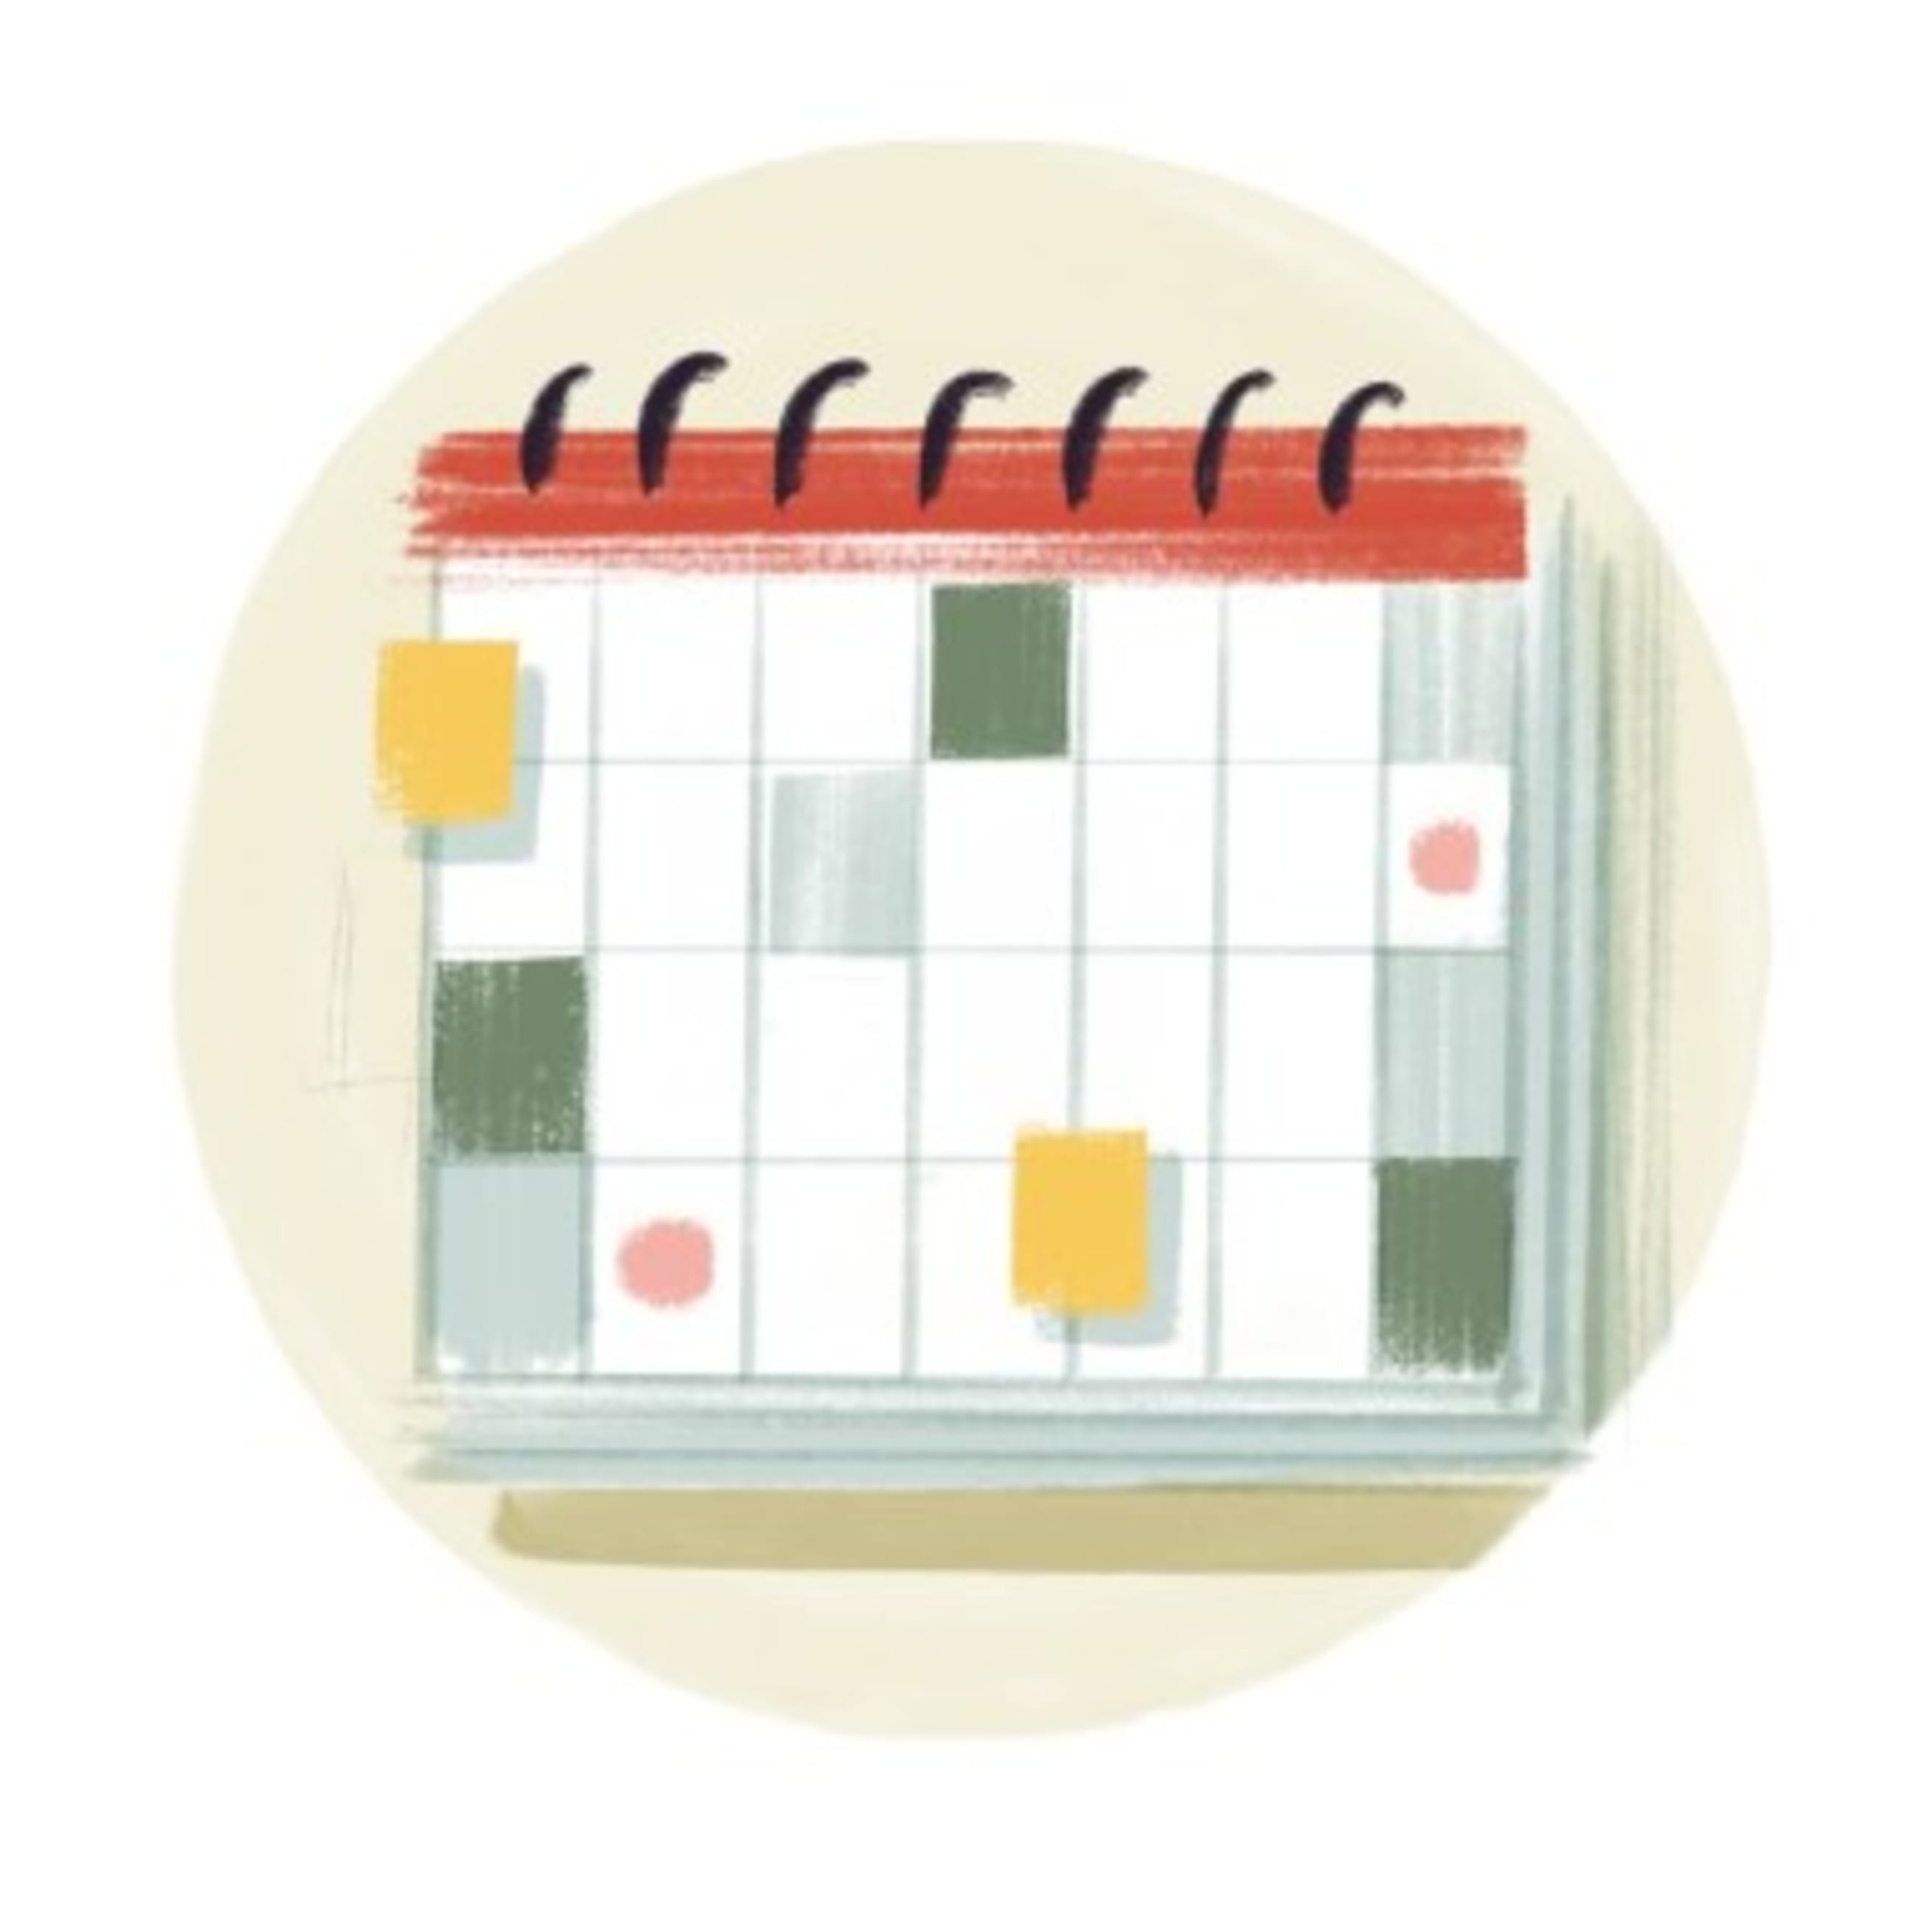 Templates - Busy calendar icon